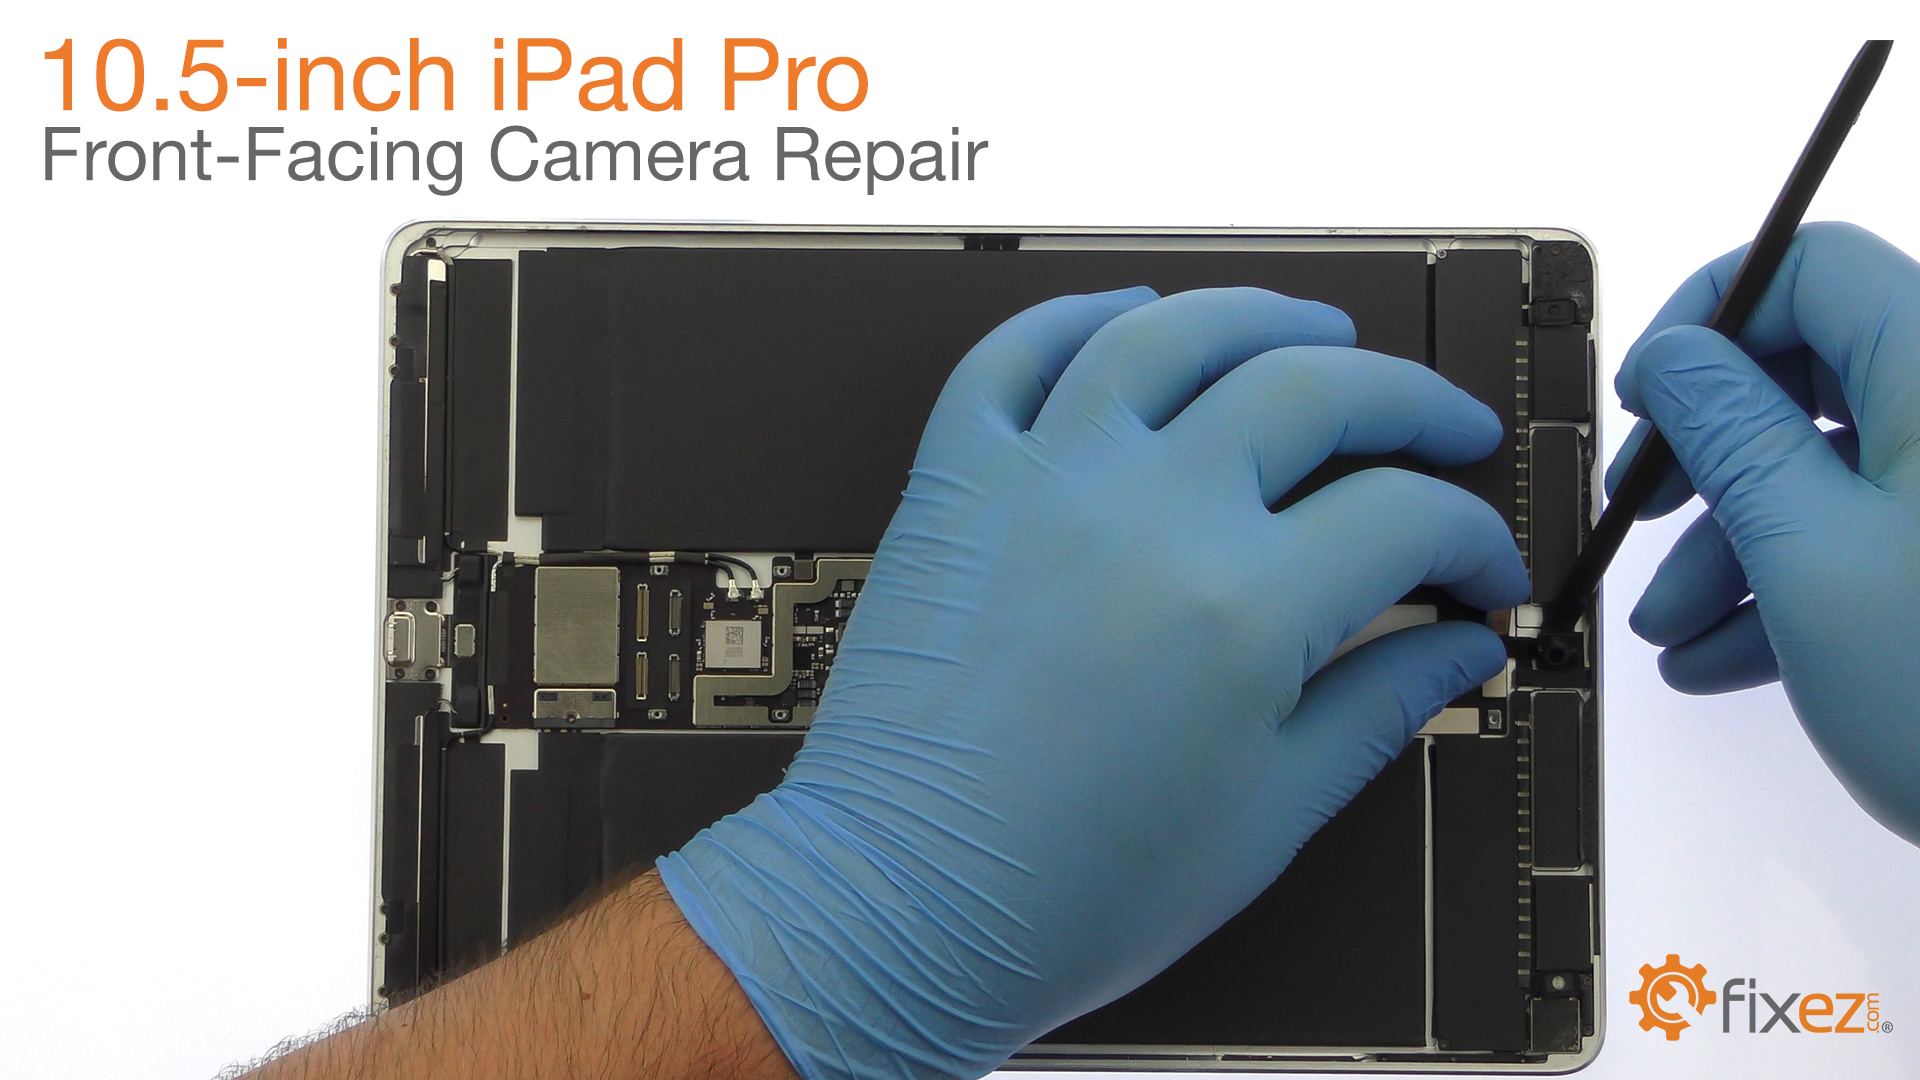 iPad Pro 10.5" Front-Facing Camera Repair